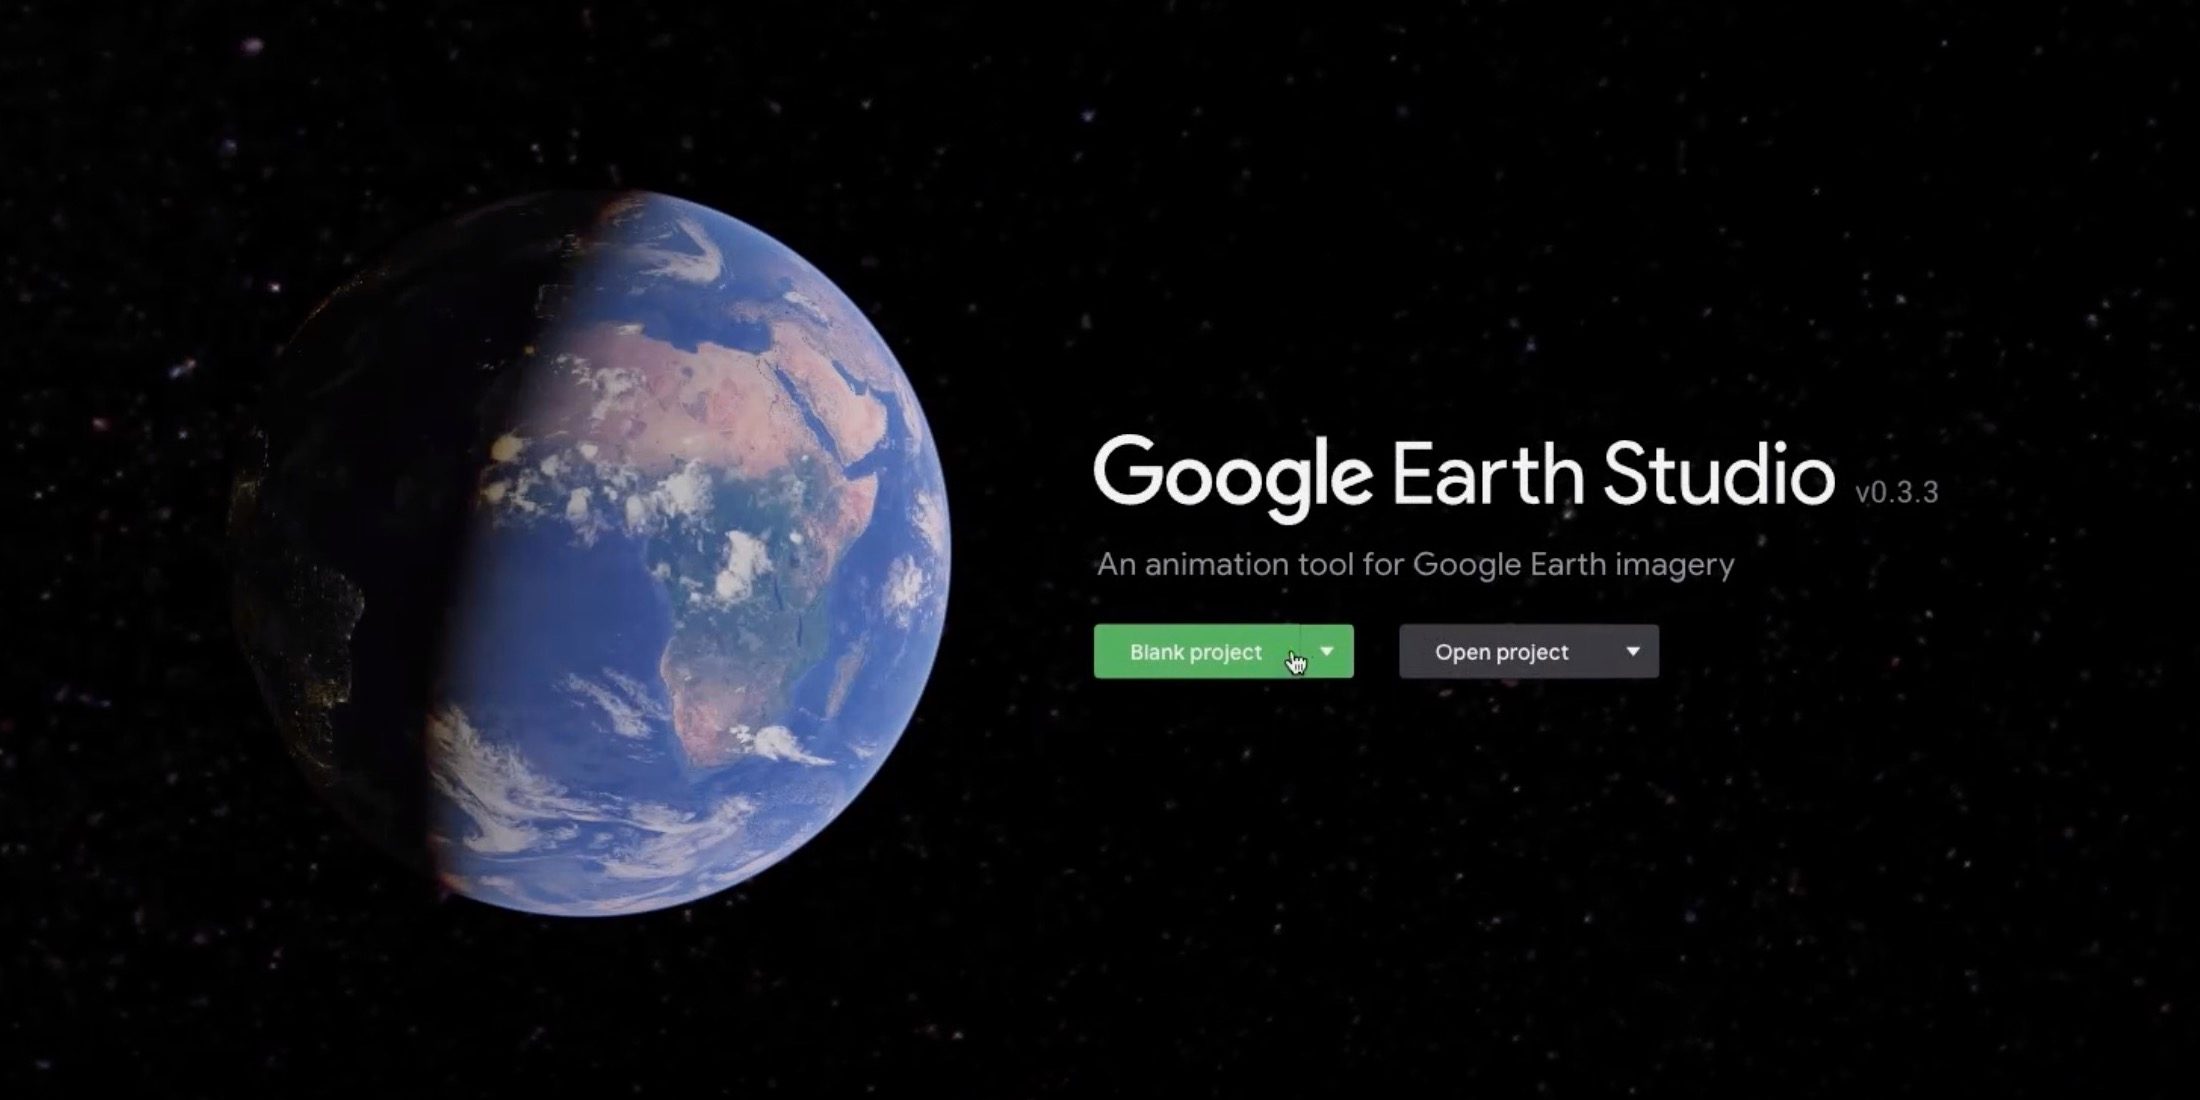 O Google Earth Studio é uma ferramenta da web para criar animações geográficas e vídeo